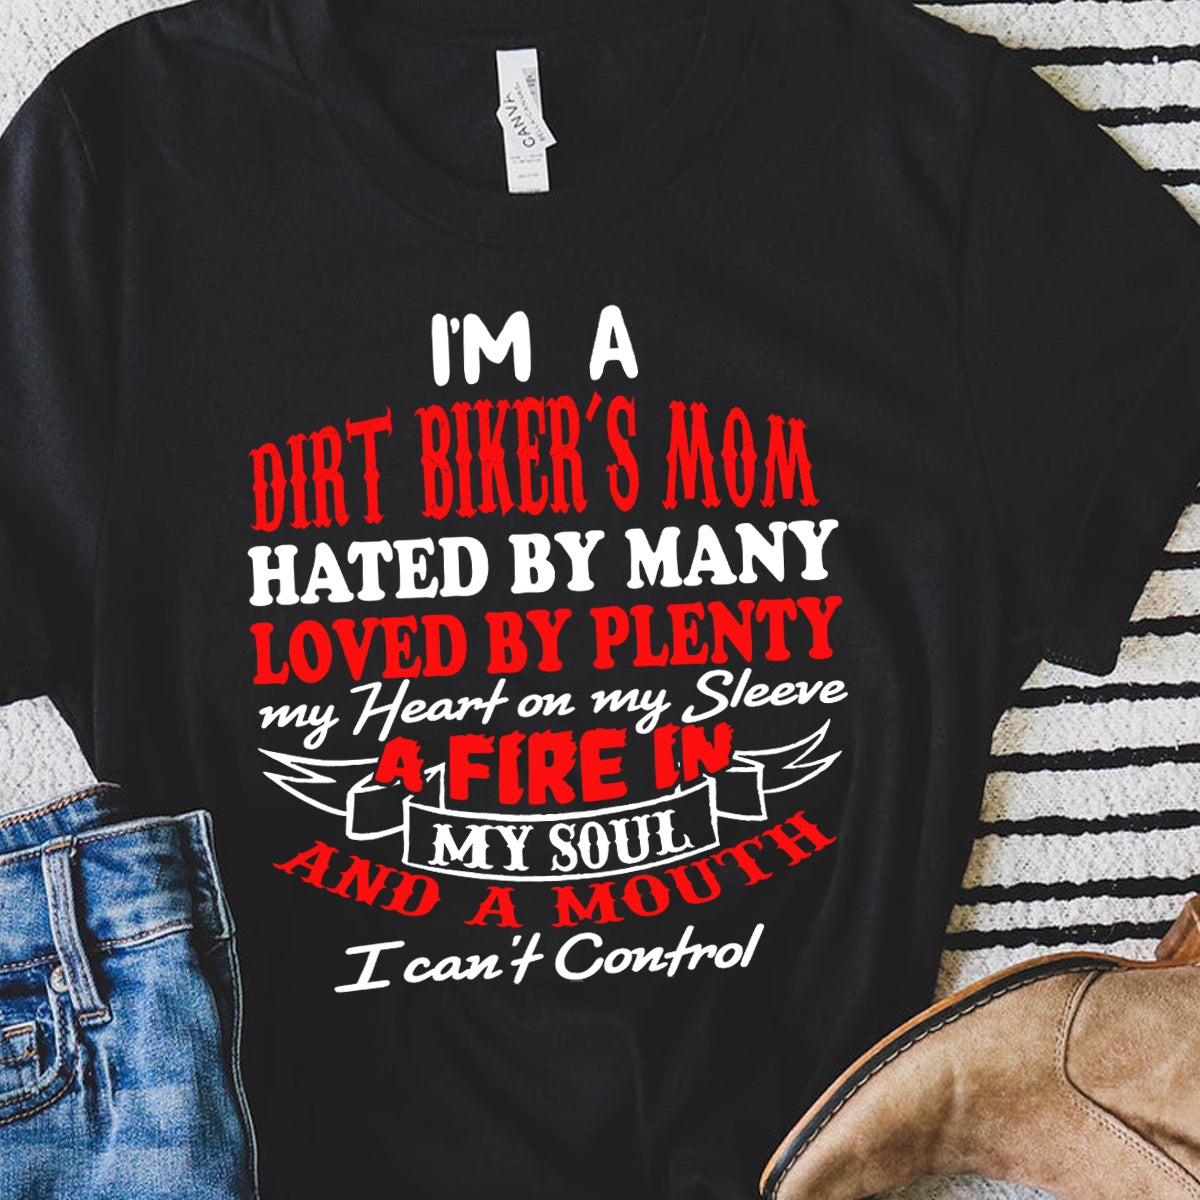 Dirt Biker's Mom t-shirts